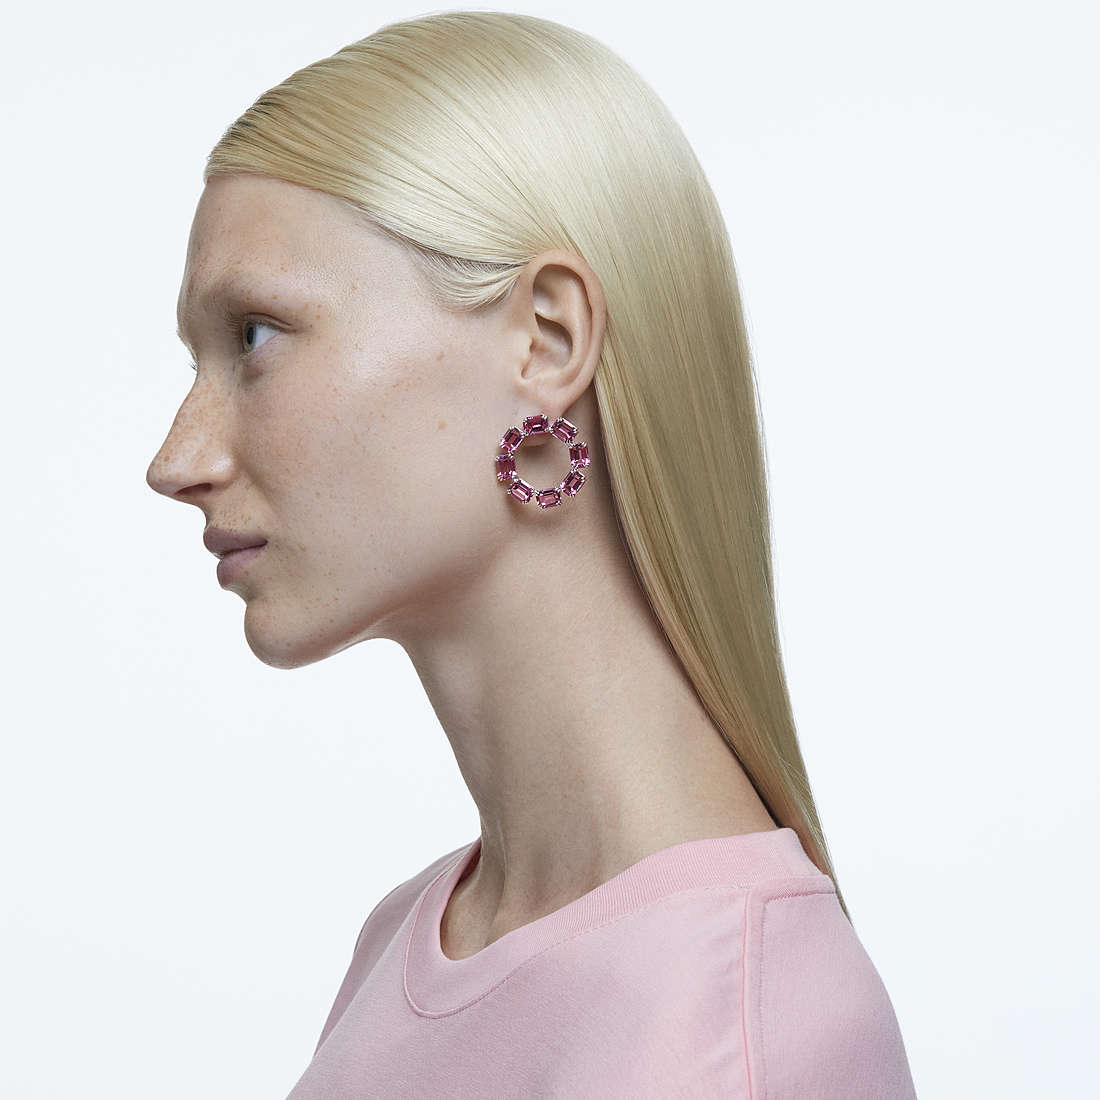 Swarovski earrings Millenia woman 5614296 wearing